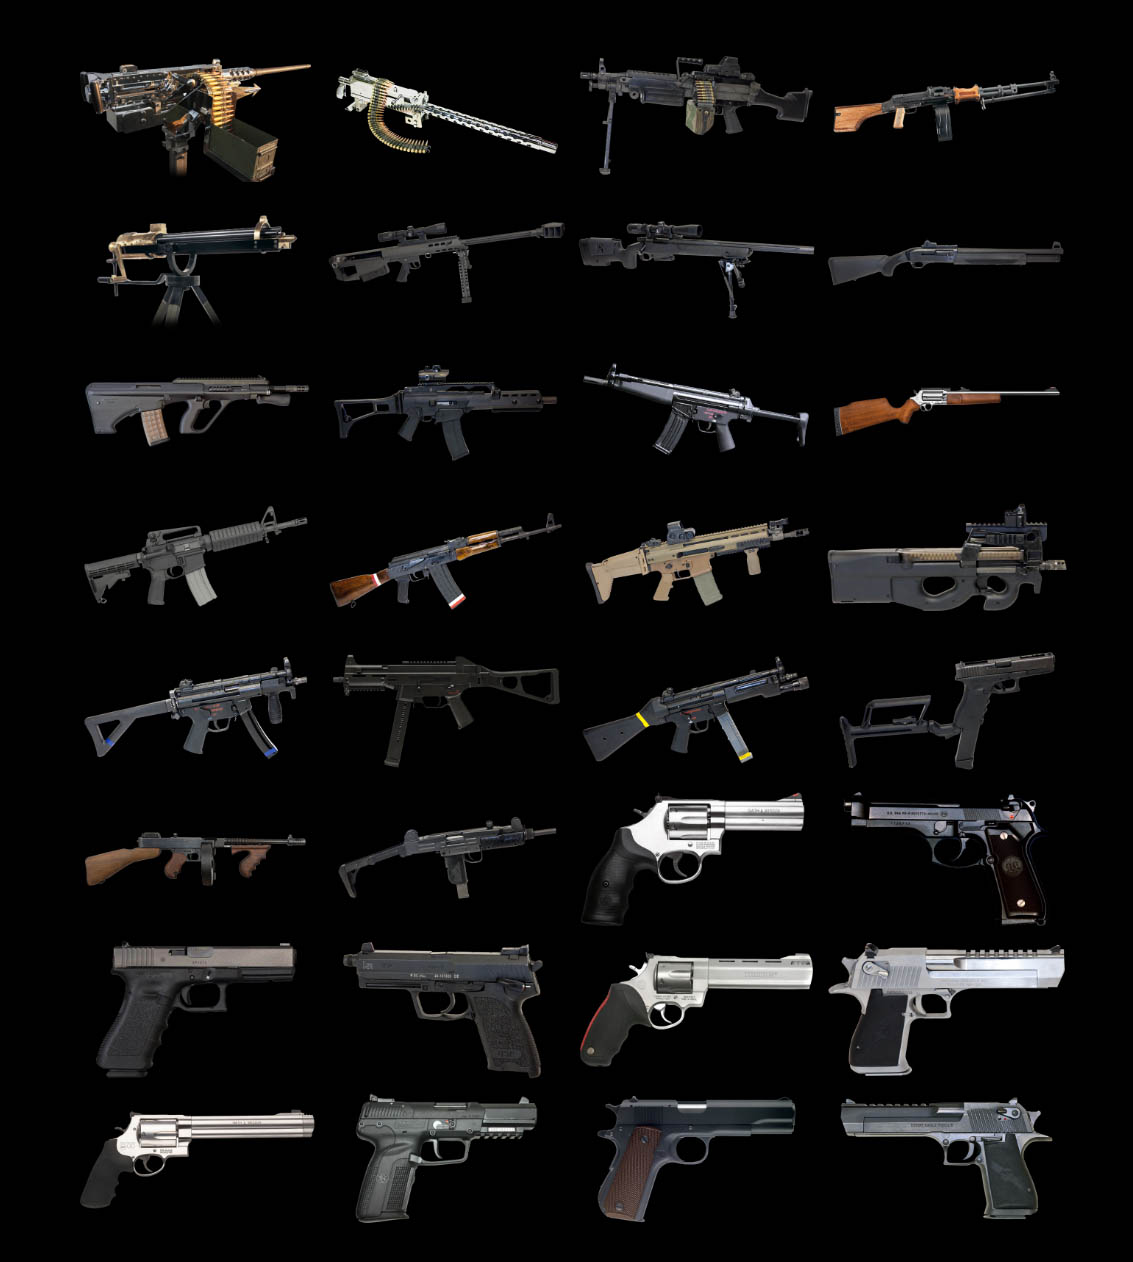 Strip Gun Club Firearm List